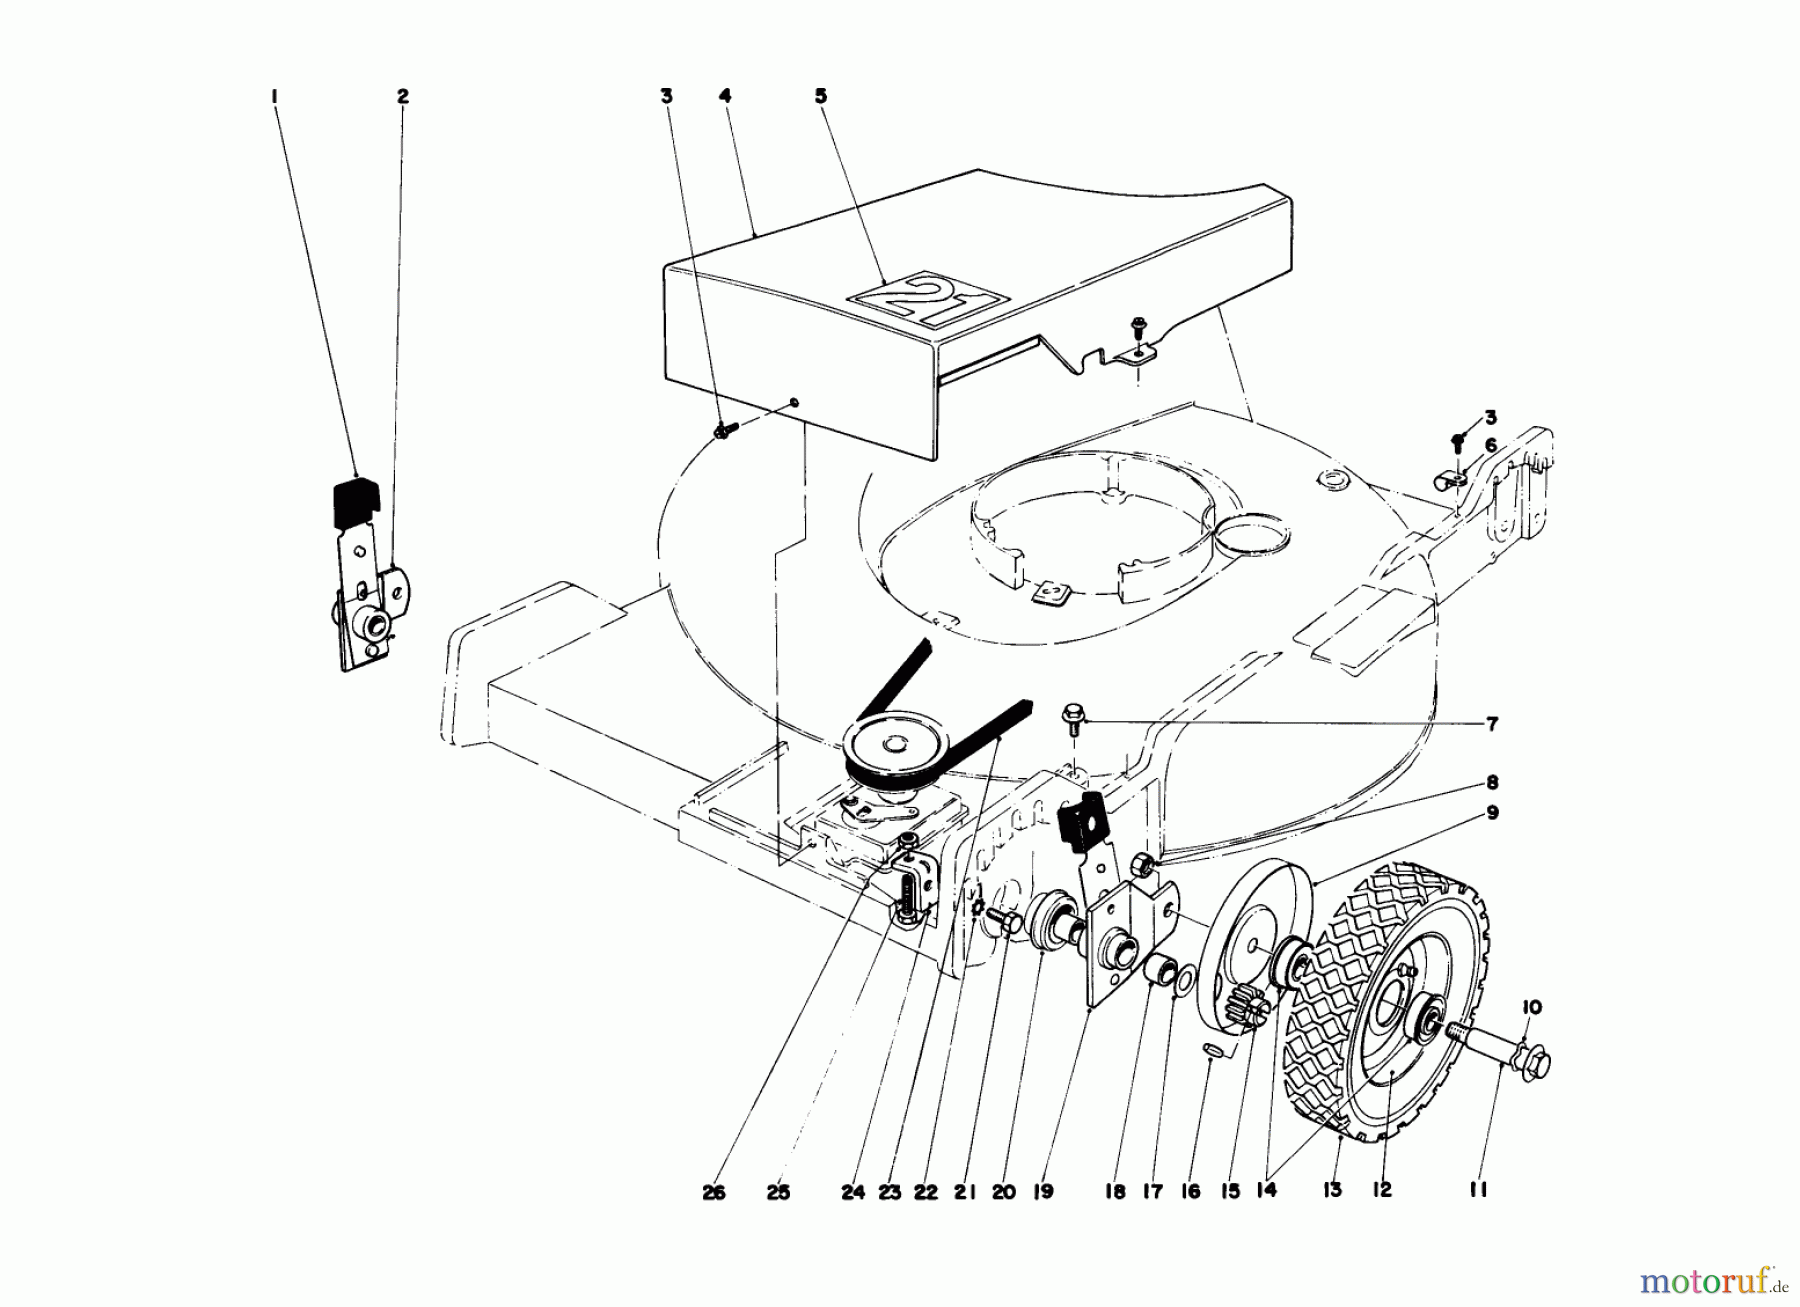  Toro Neu Mowers, Walk-Behind Seite 1 20740 - Toro Lawnmower, 1978 (8000001-8999999) FRONT WHEEL AND PIVOT ARM ASSEMBLY